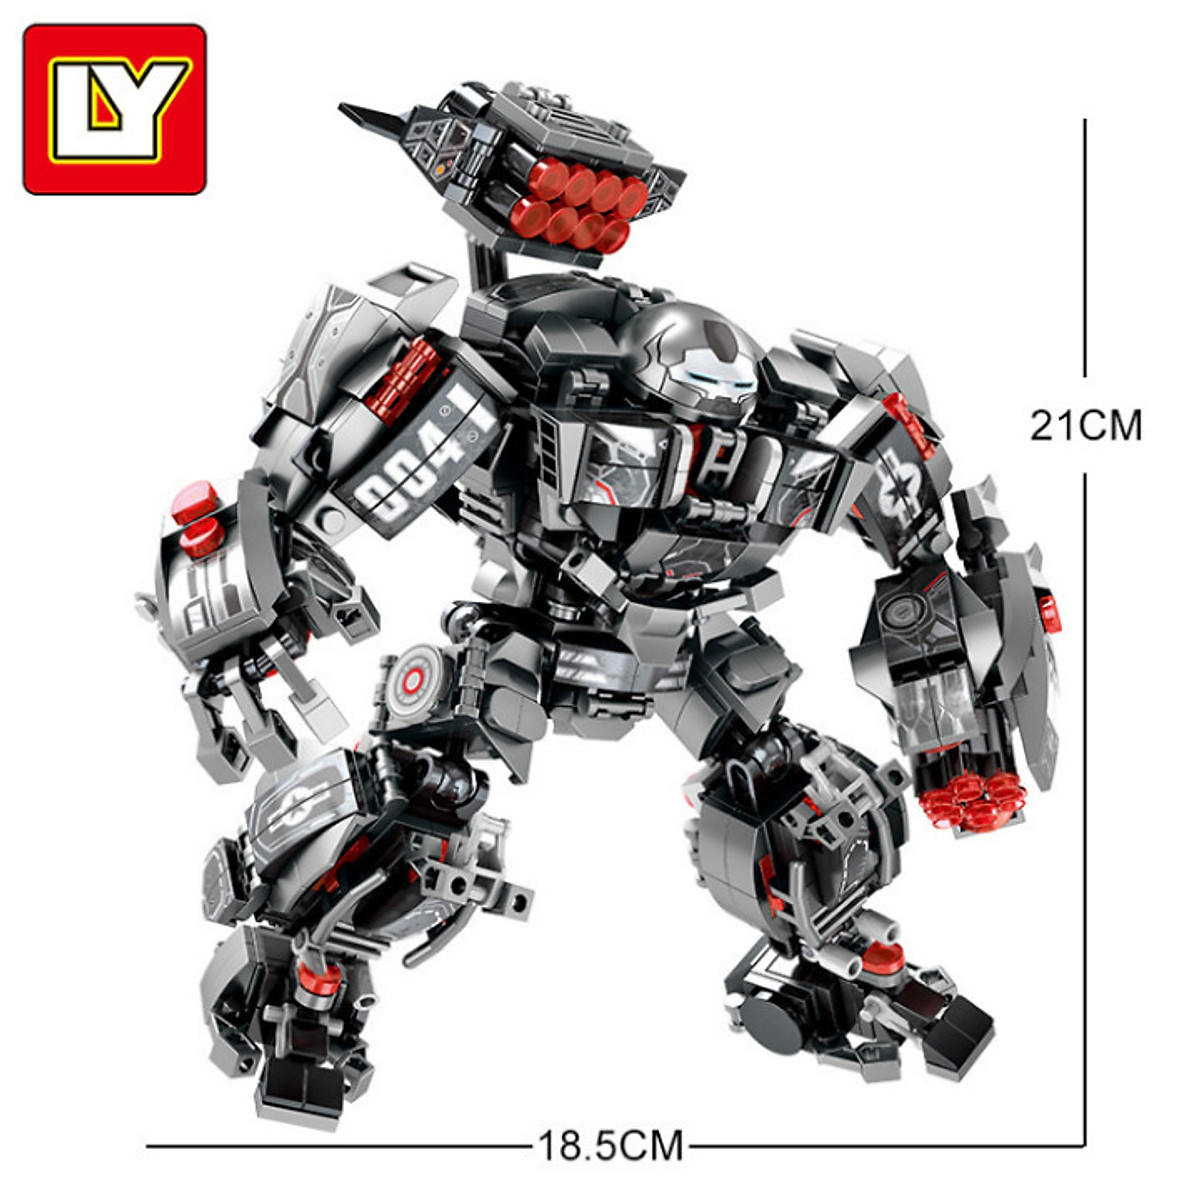 Lắp ráp Lego Hulkbuster chiến binh Mecha đen 632 chi tiết - LY76013